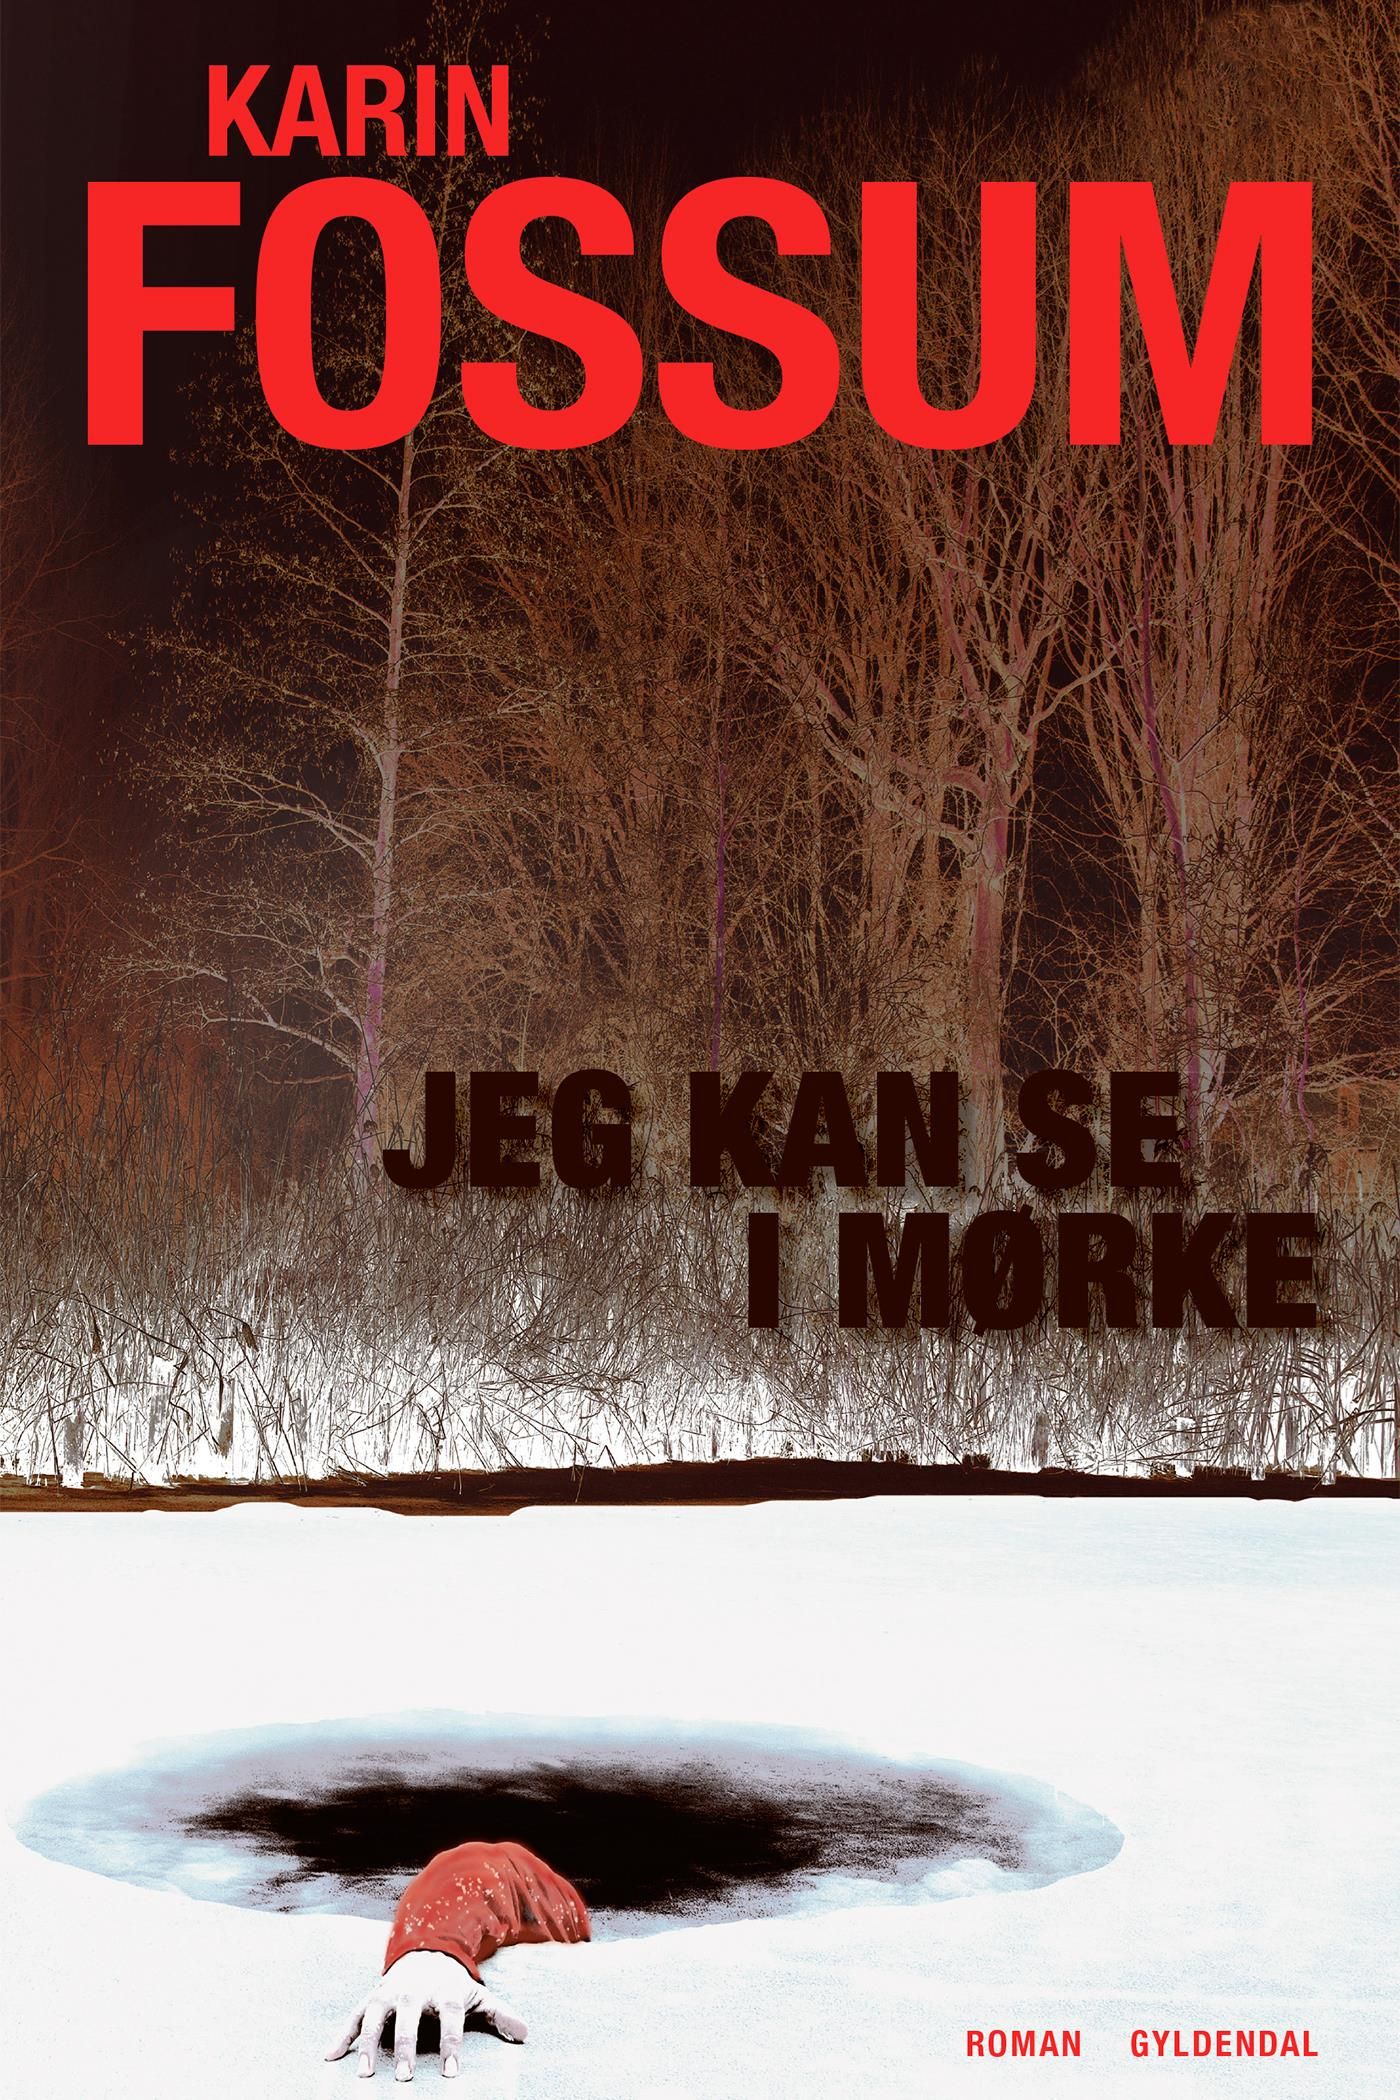 Jeg kan se i mørke, e-bog af Karin Fossum